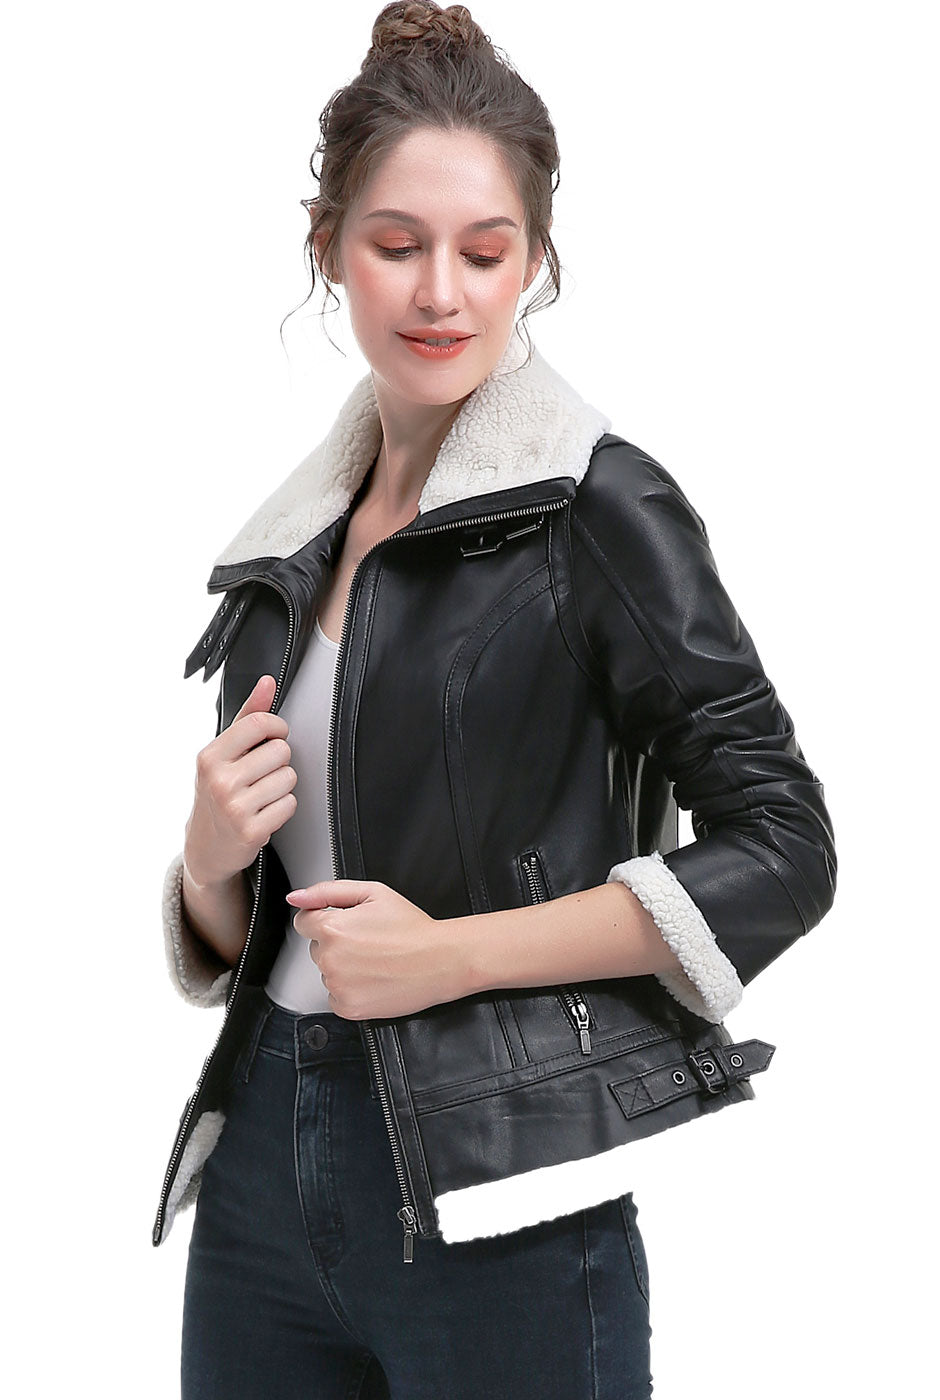 BGSD Women Hessa Lambskin Leather Jacket